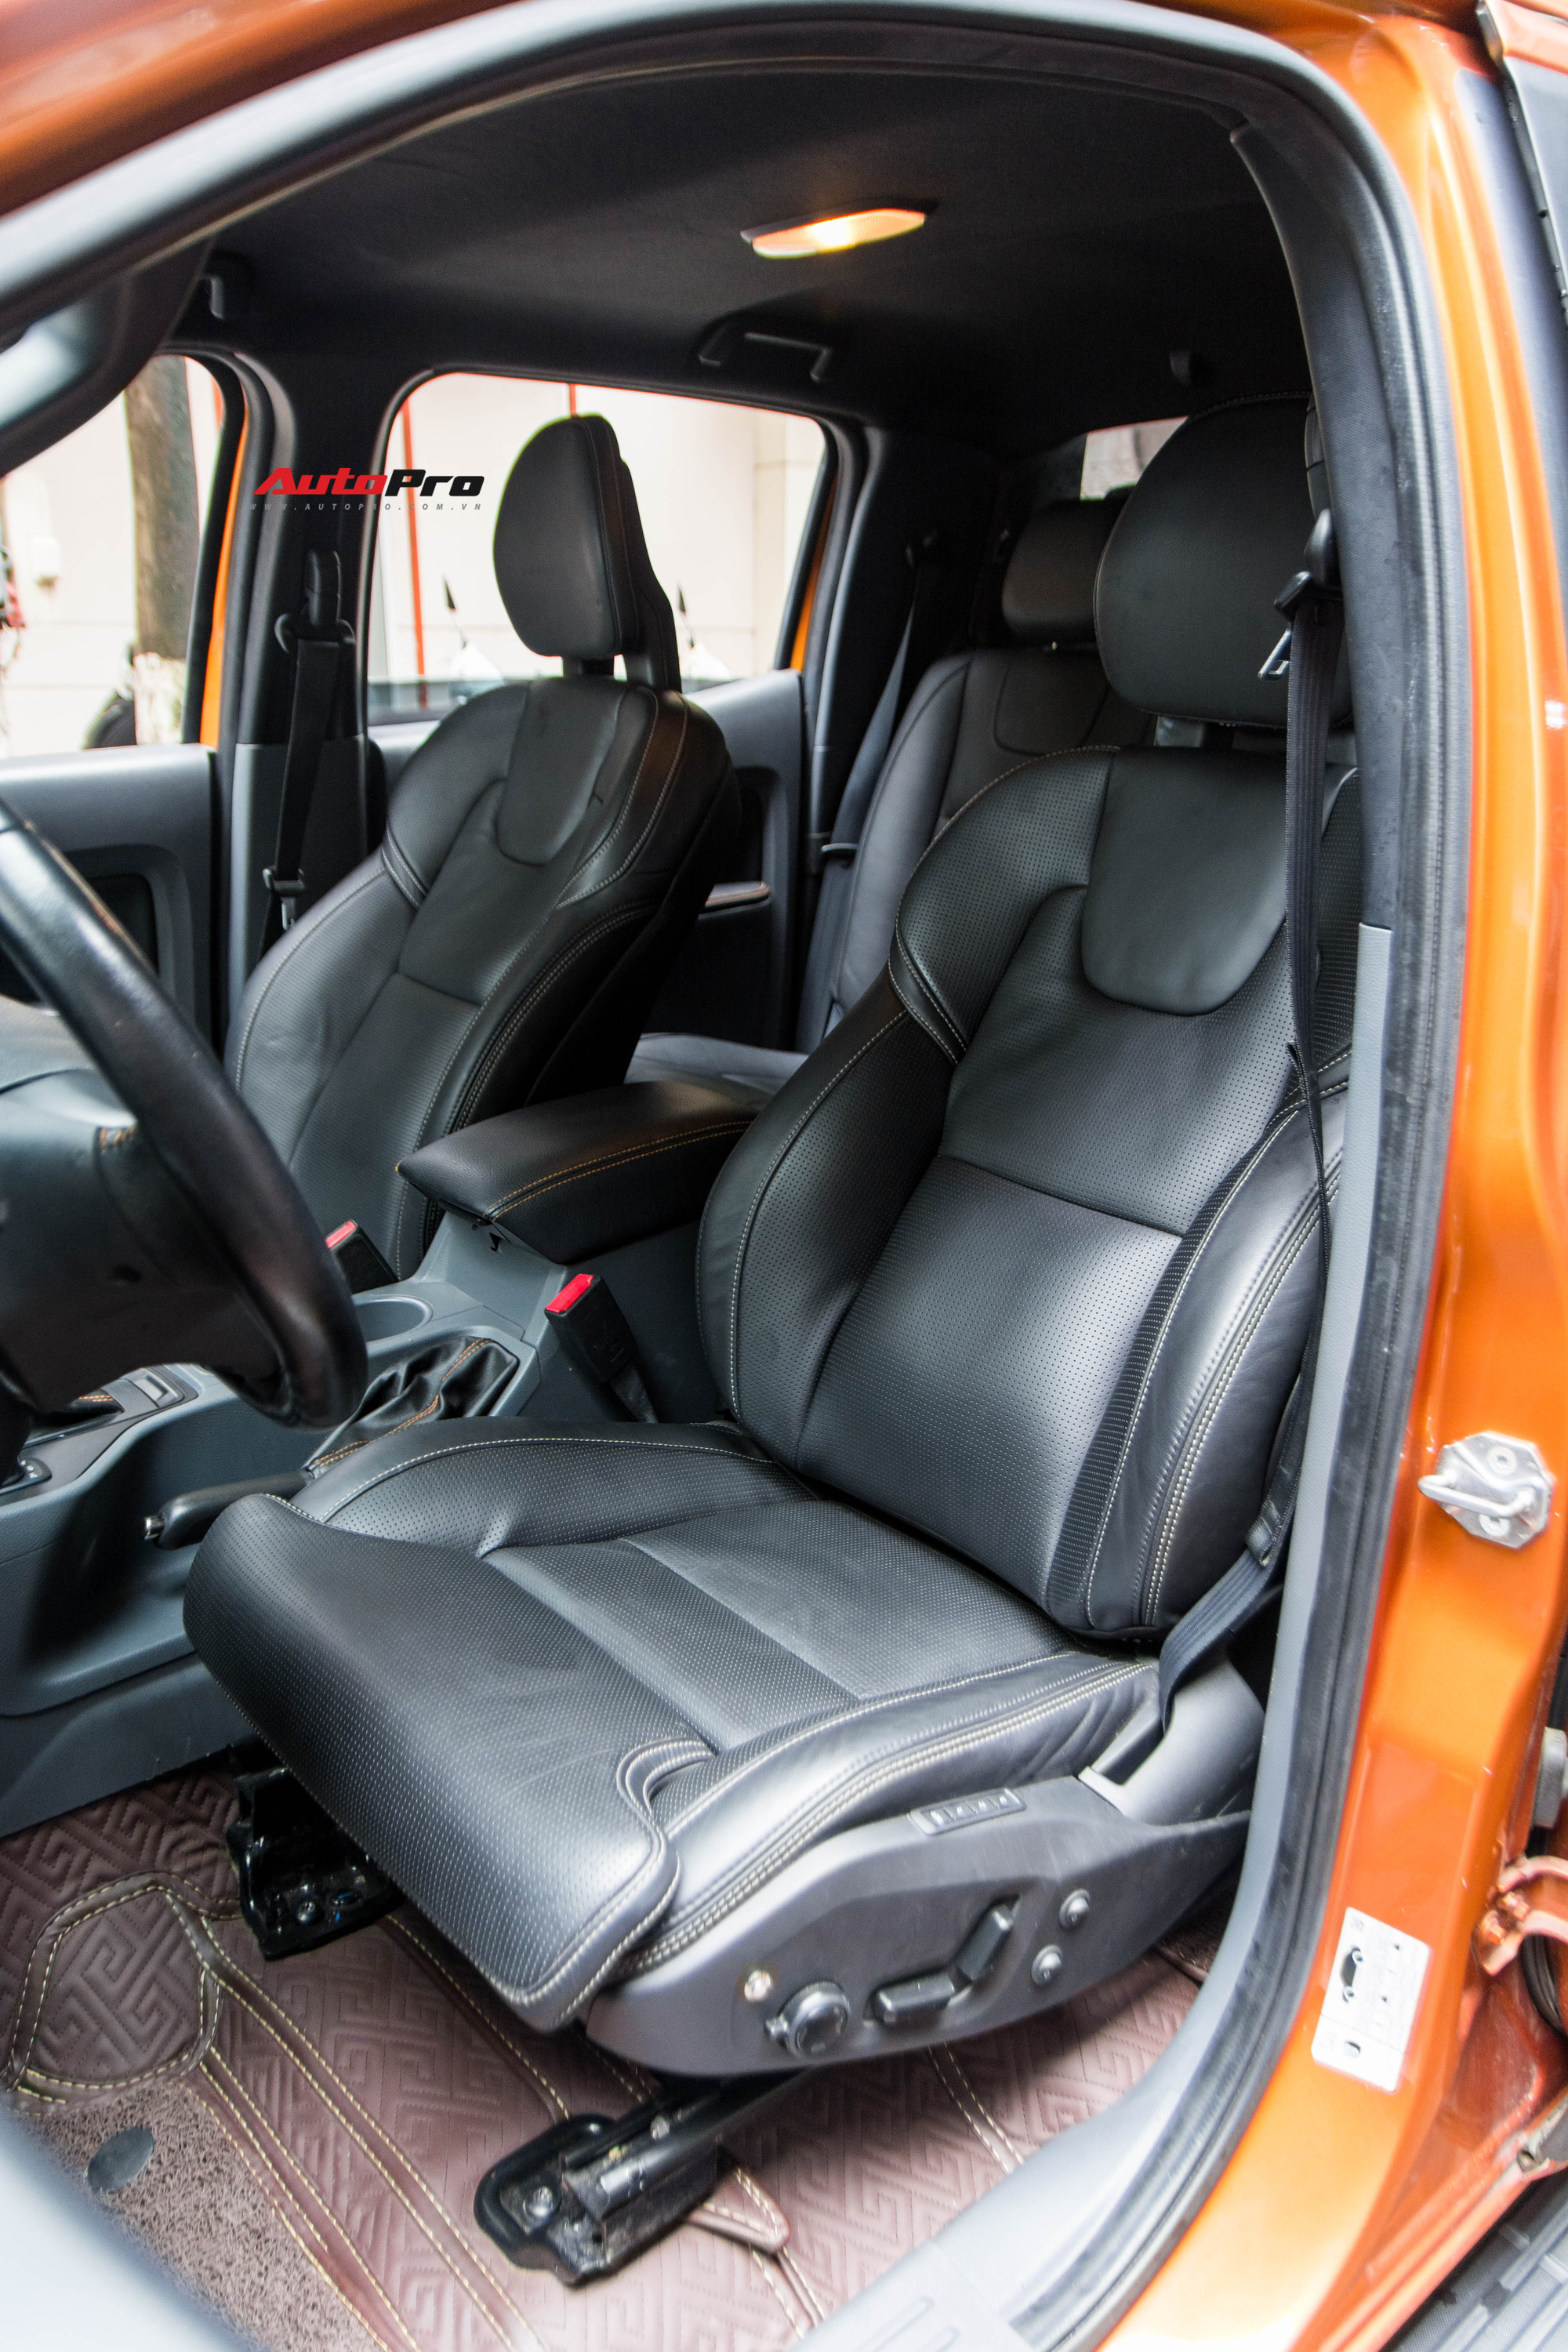 Trải nghiệm ghế Volvo XC90 trên Ford Ranger: Khi sự tiện nghi, thoải mái giá 70 triệu - Ảnh 2.